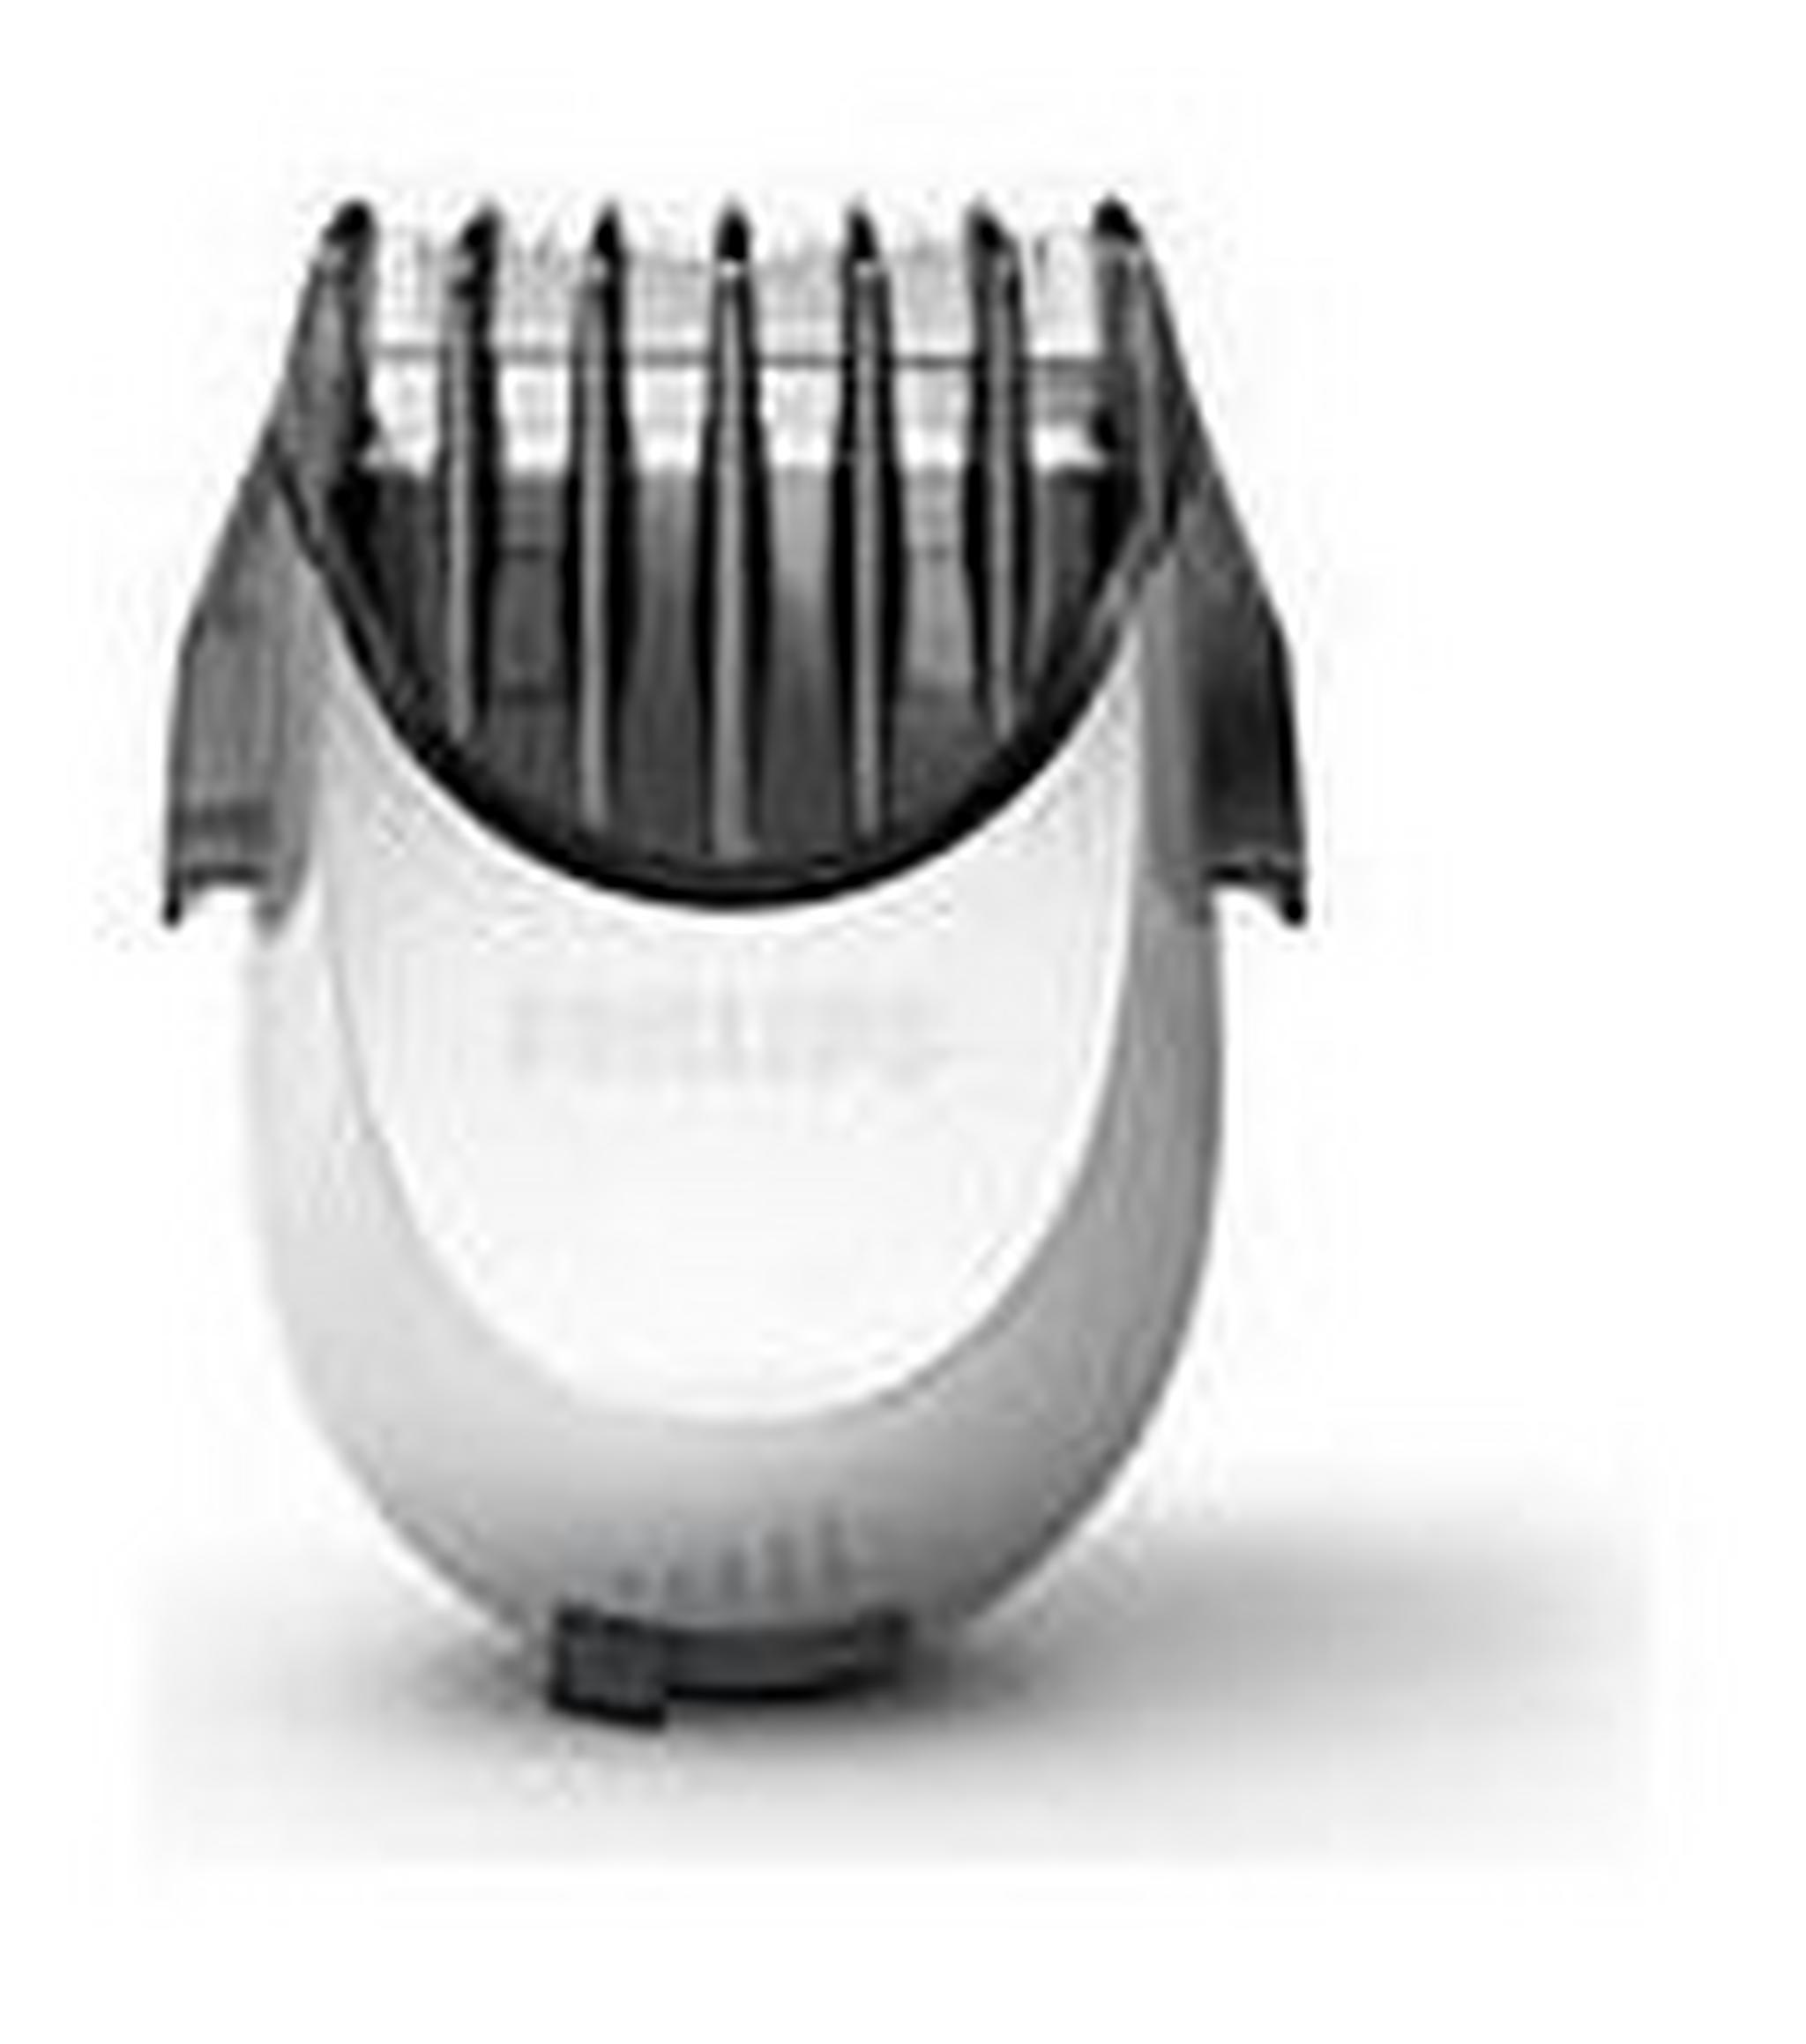 ماكينة الحلاقة الكهربائية للحلاقة الرطبة والجافة من سلسلة ٧٠٠٠ من فيليبس – فضي   (S7530/24)